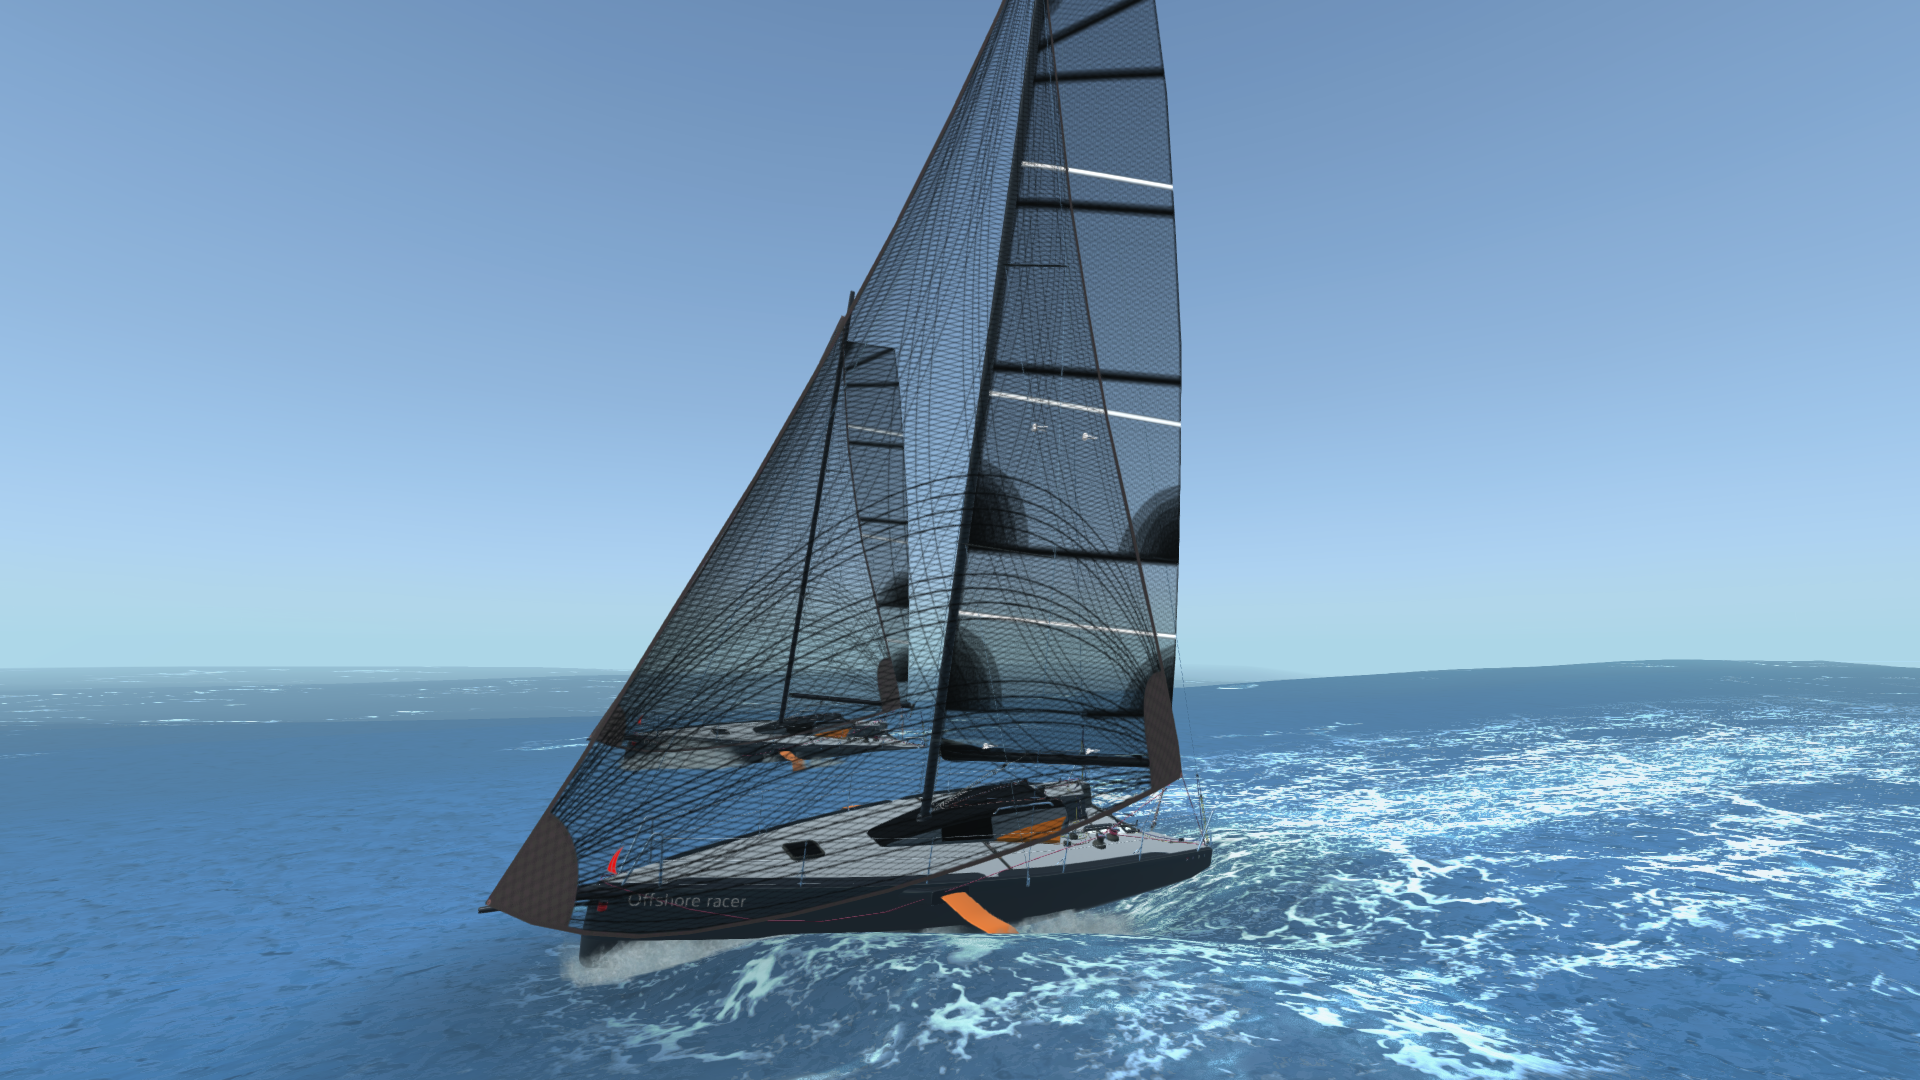 Sail kreepa. Sailaway the Sailing Simulator. Sail Simulator 2010. Sail Yacht Sailing Simulator. Sailaway — the Sailing Simulator игра.